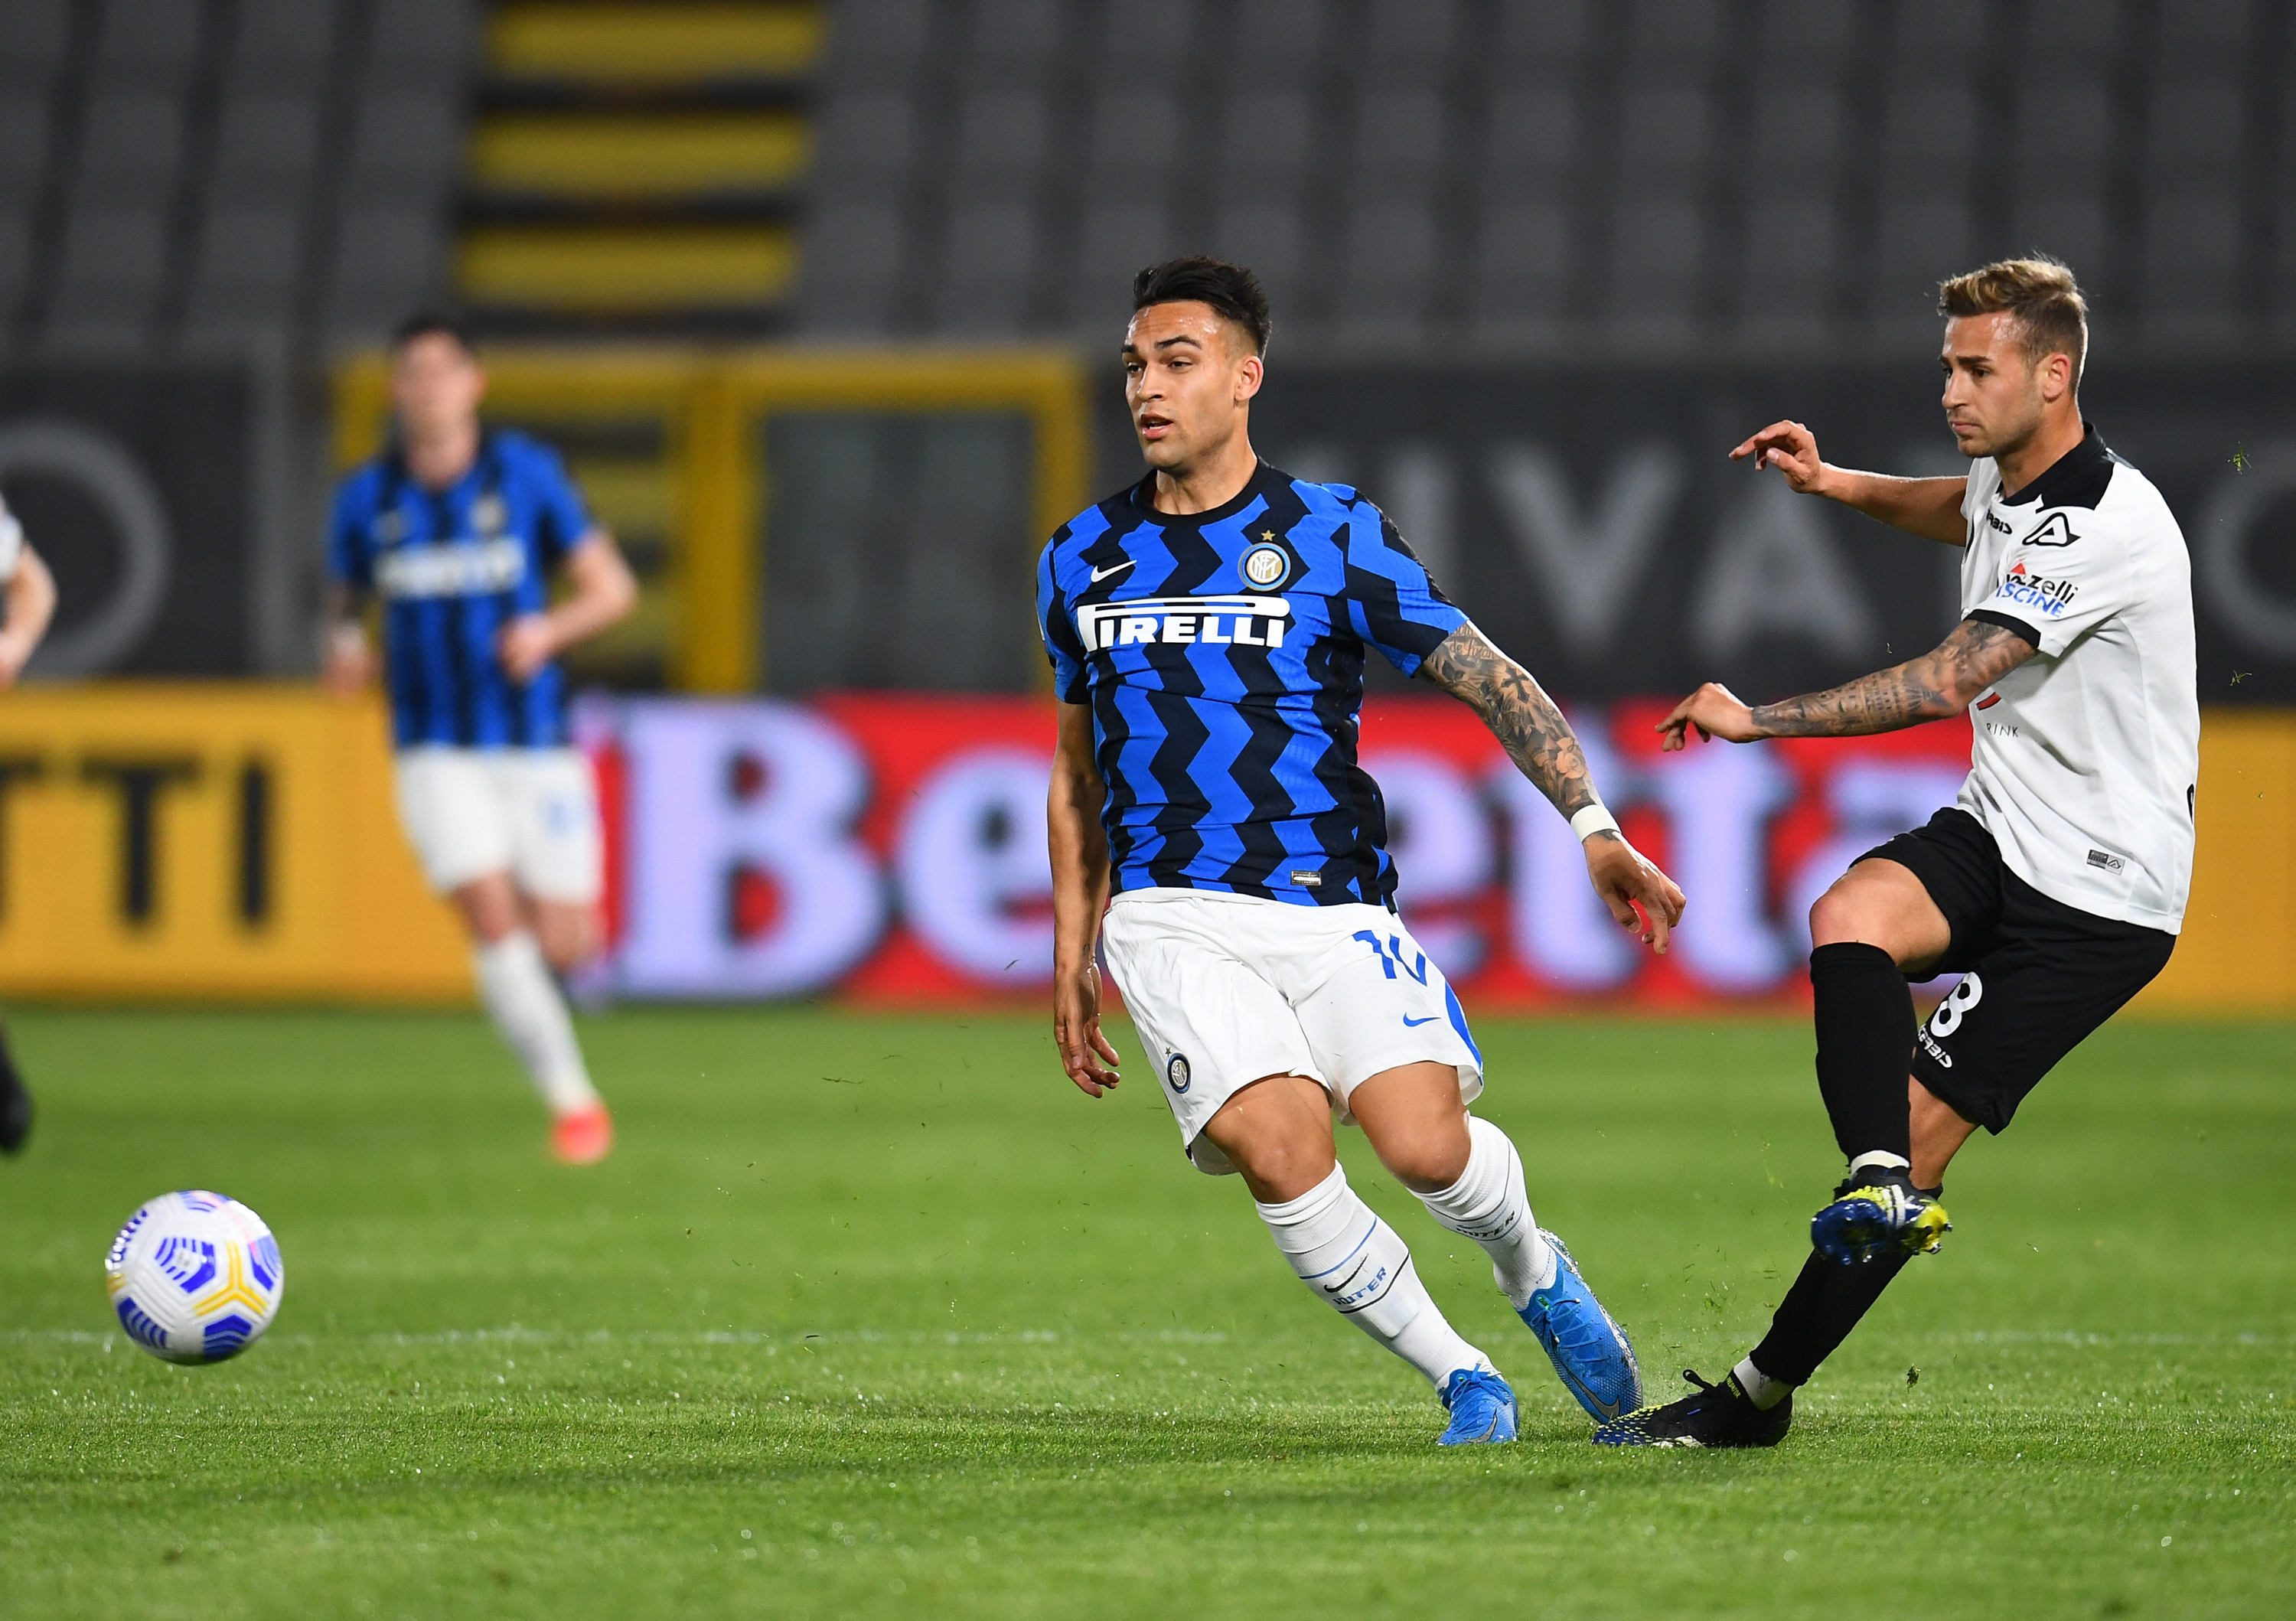 Inter Milan Malah Kesulitan Lawan Tim Promosi Nih